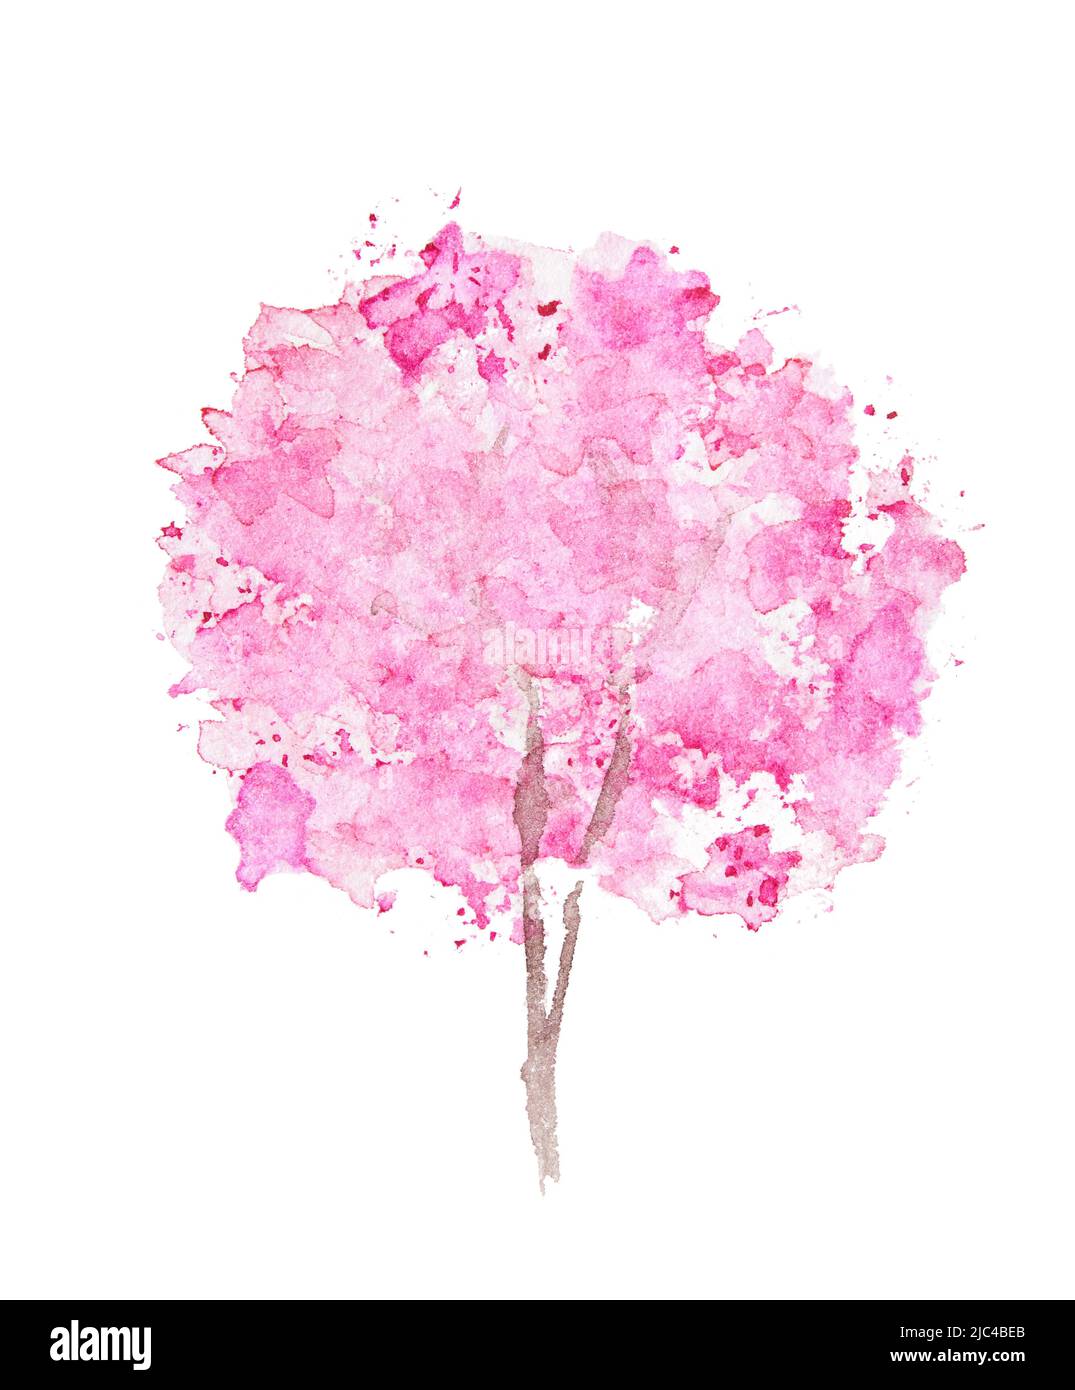 Albero rosa acquerello in fiore. Fiore di primavera in fiore sul ramo.  Bella illustrazione estiva. Disegno a mano dello schizzo. Carta acquarel  per il Giappone. Elemento di design Sakura Foto stock -